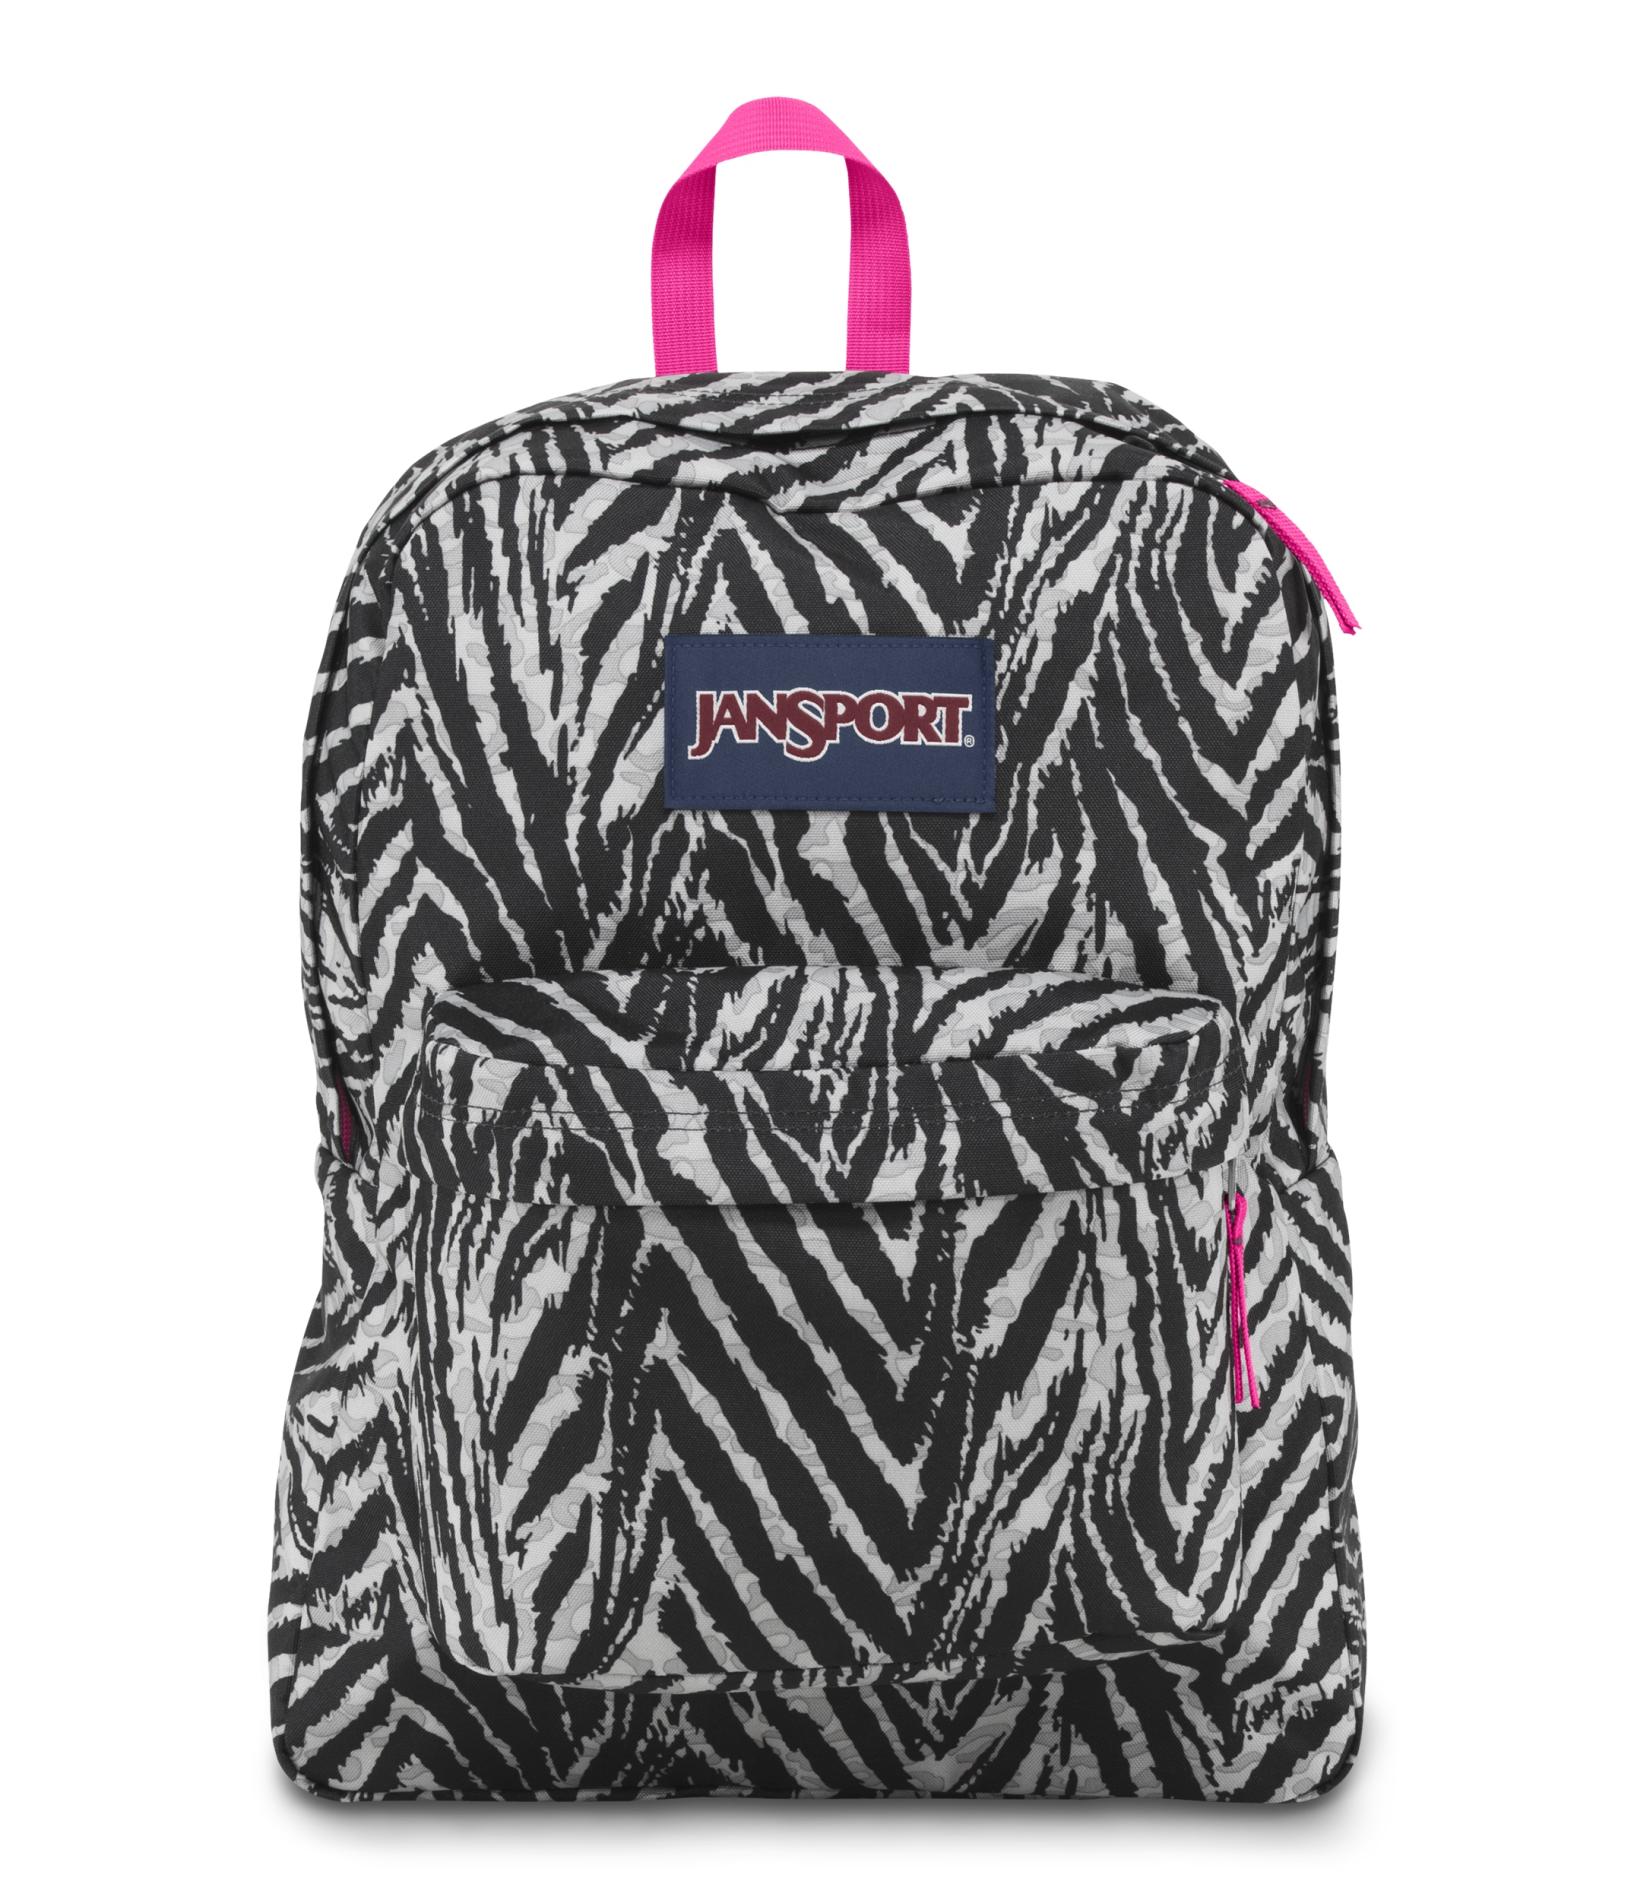 Jansport SuperBreak Backpack - Zebra Print